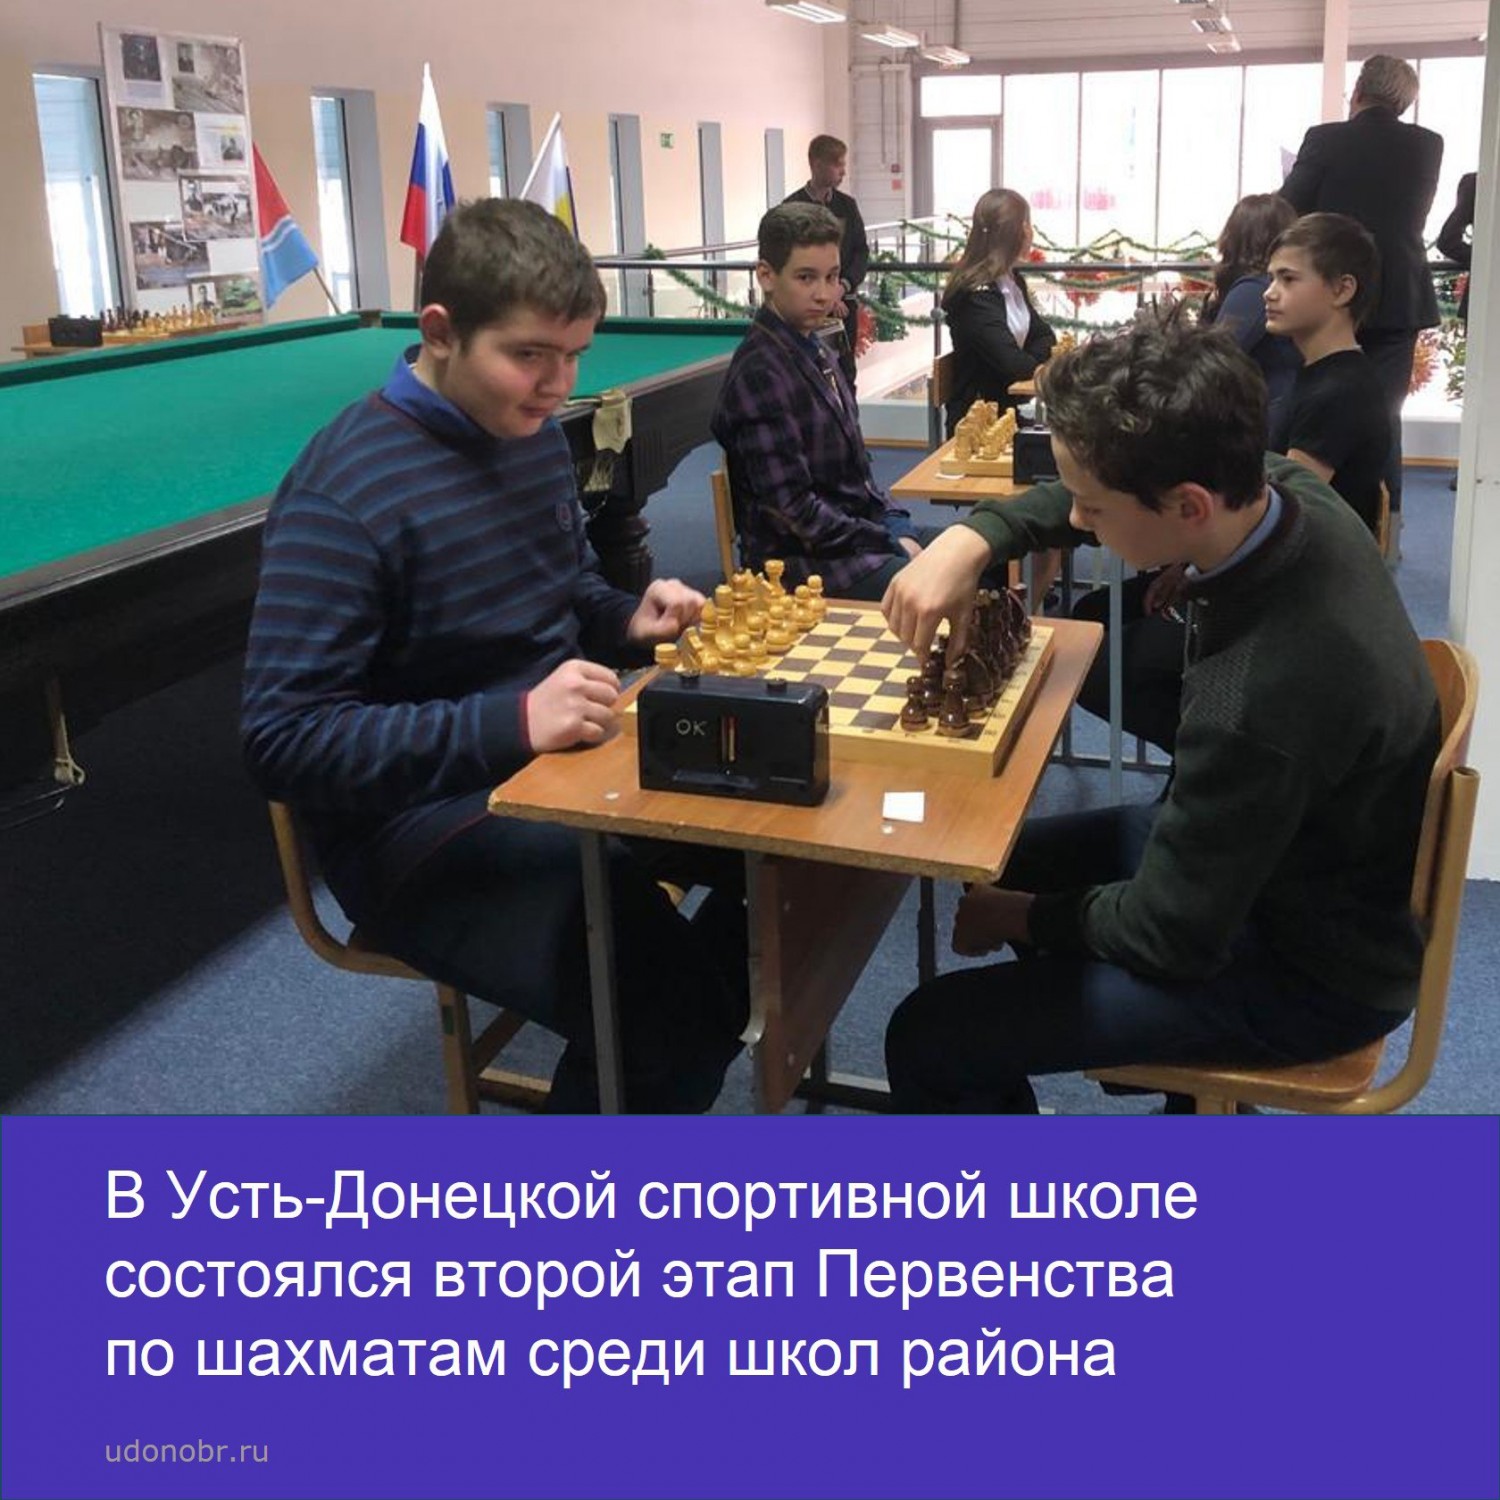 В Усть-Донецкой спортивной школе состоялся второй этап Первенства по шахматам среди школ района